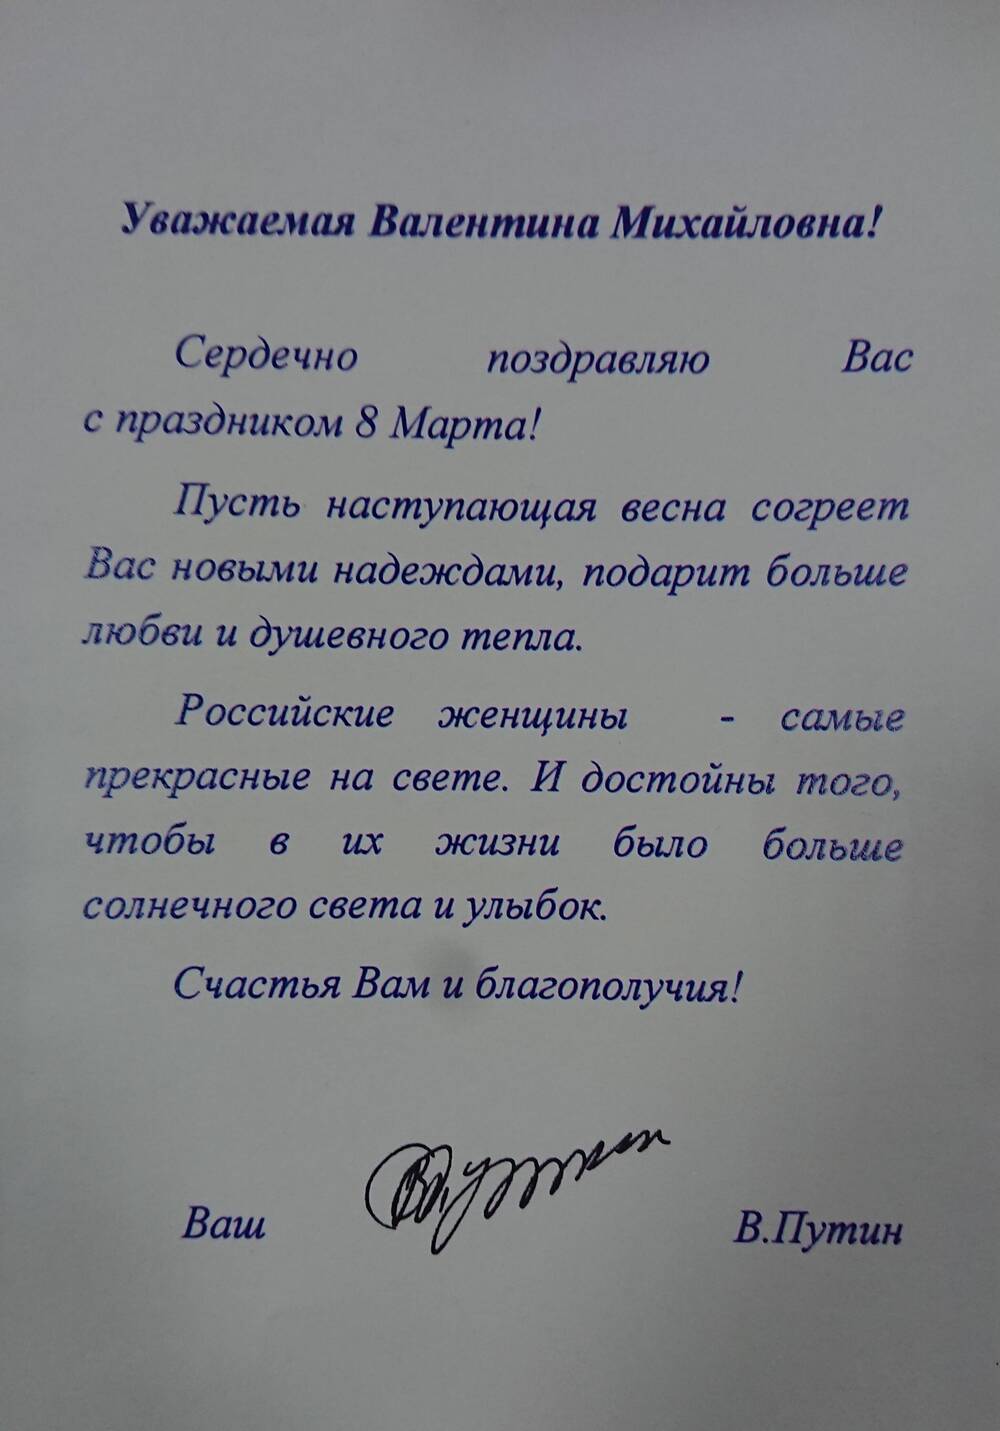 Поздравление с праздником 8-ое марта Леонтьевой В.М. от Президента РФ В.В.Путина. 2000-е года.